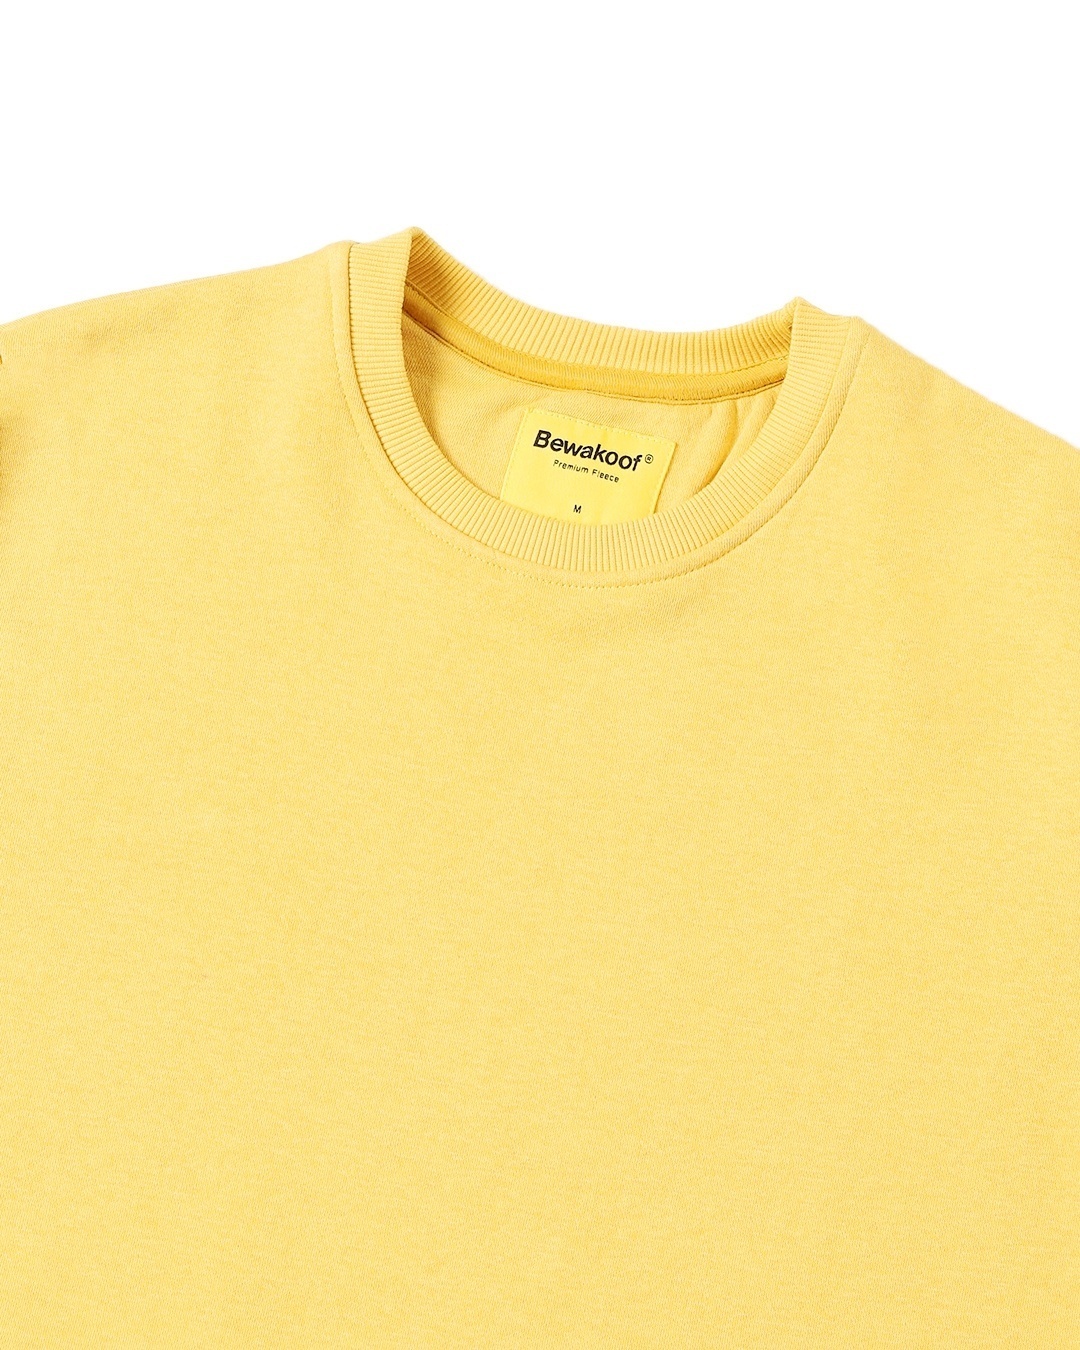 Shop Men's Yellow Fleece Sweatshirt